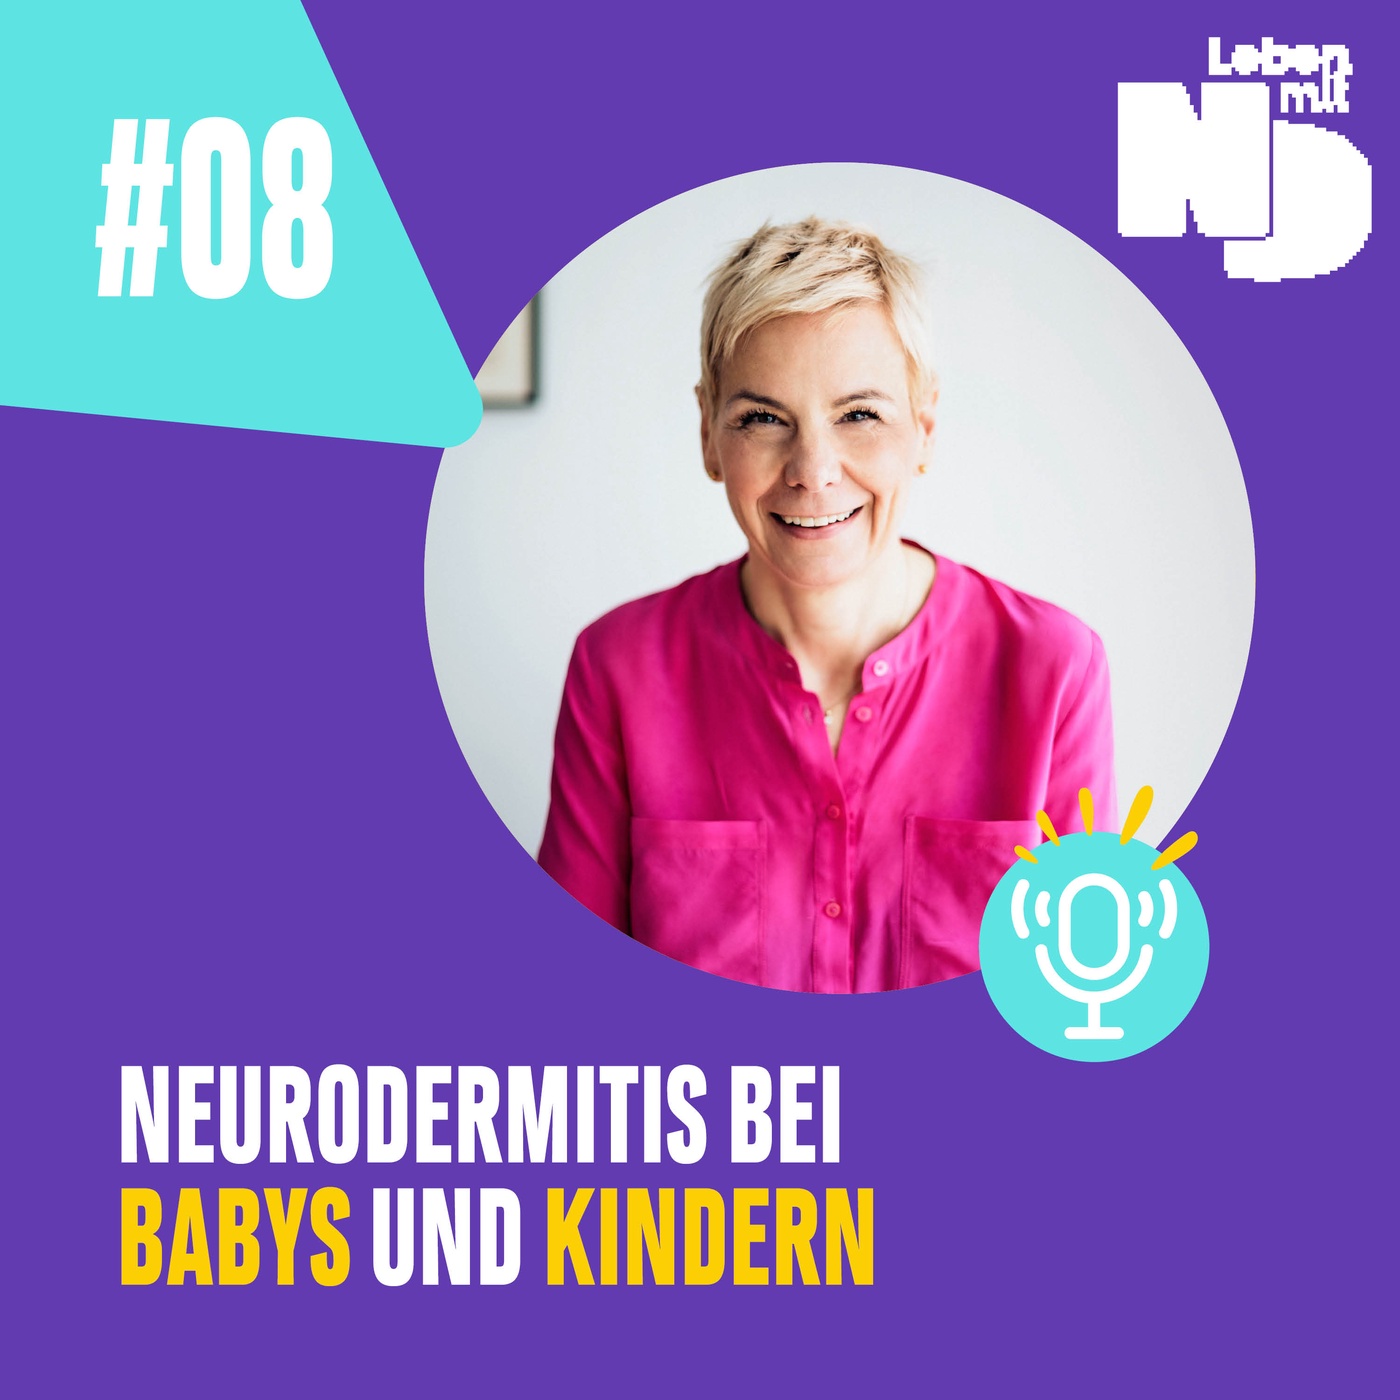 Neurodermitis bei Babys und Kindern – eine Erkrankung, die die ganze Familie betrifft